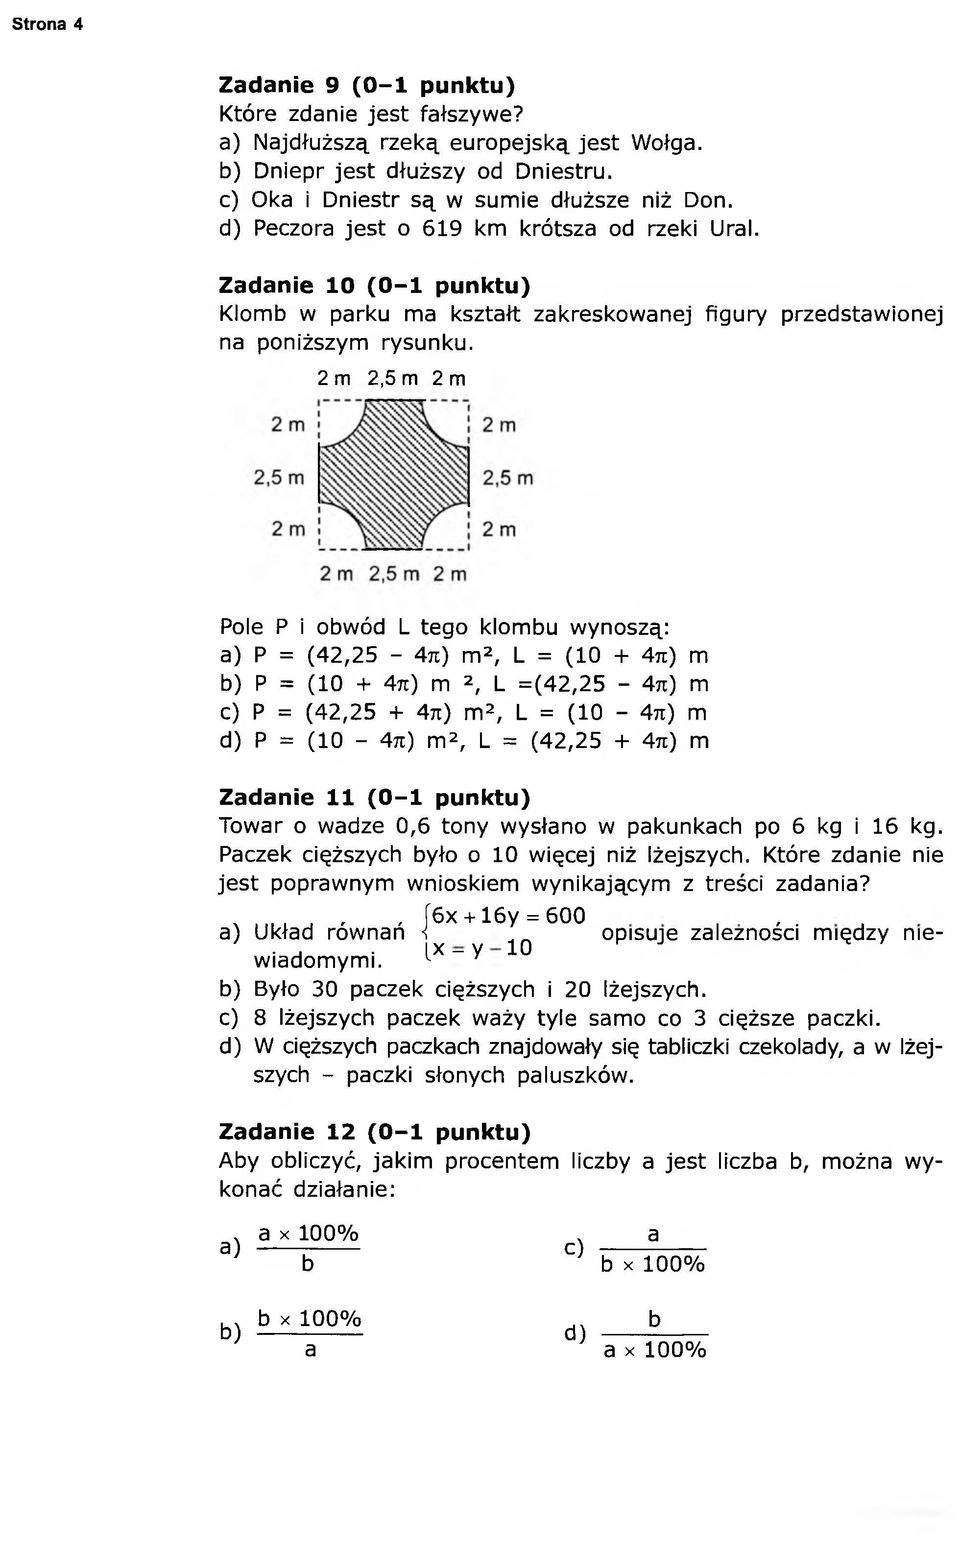 2 m 2,5 m 2 m Pole P i obwód L tego klombu wynoszą: a) P = (42,25-4n) m2, L = (10 + 4n) m b) P = (10 + 471) m 2, L =(42,25-4n) m c) P = (42,25 + 4ji) m2, L = (10-4ti) m d) P = (10-4n) m2, L = (42,25